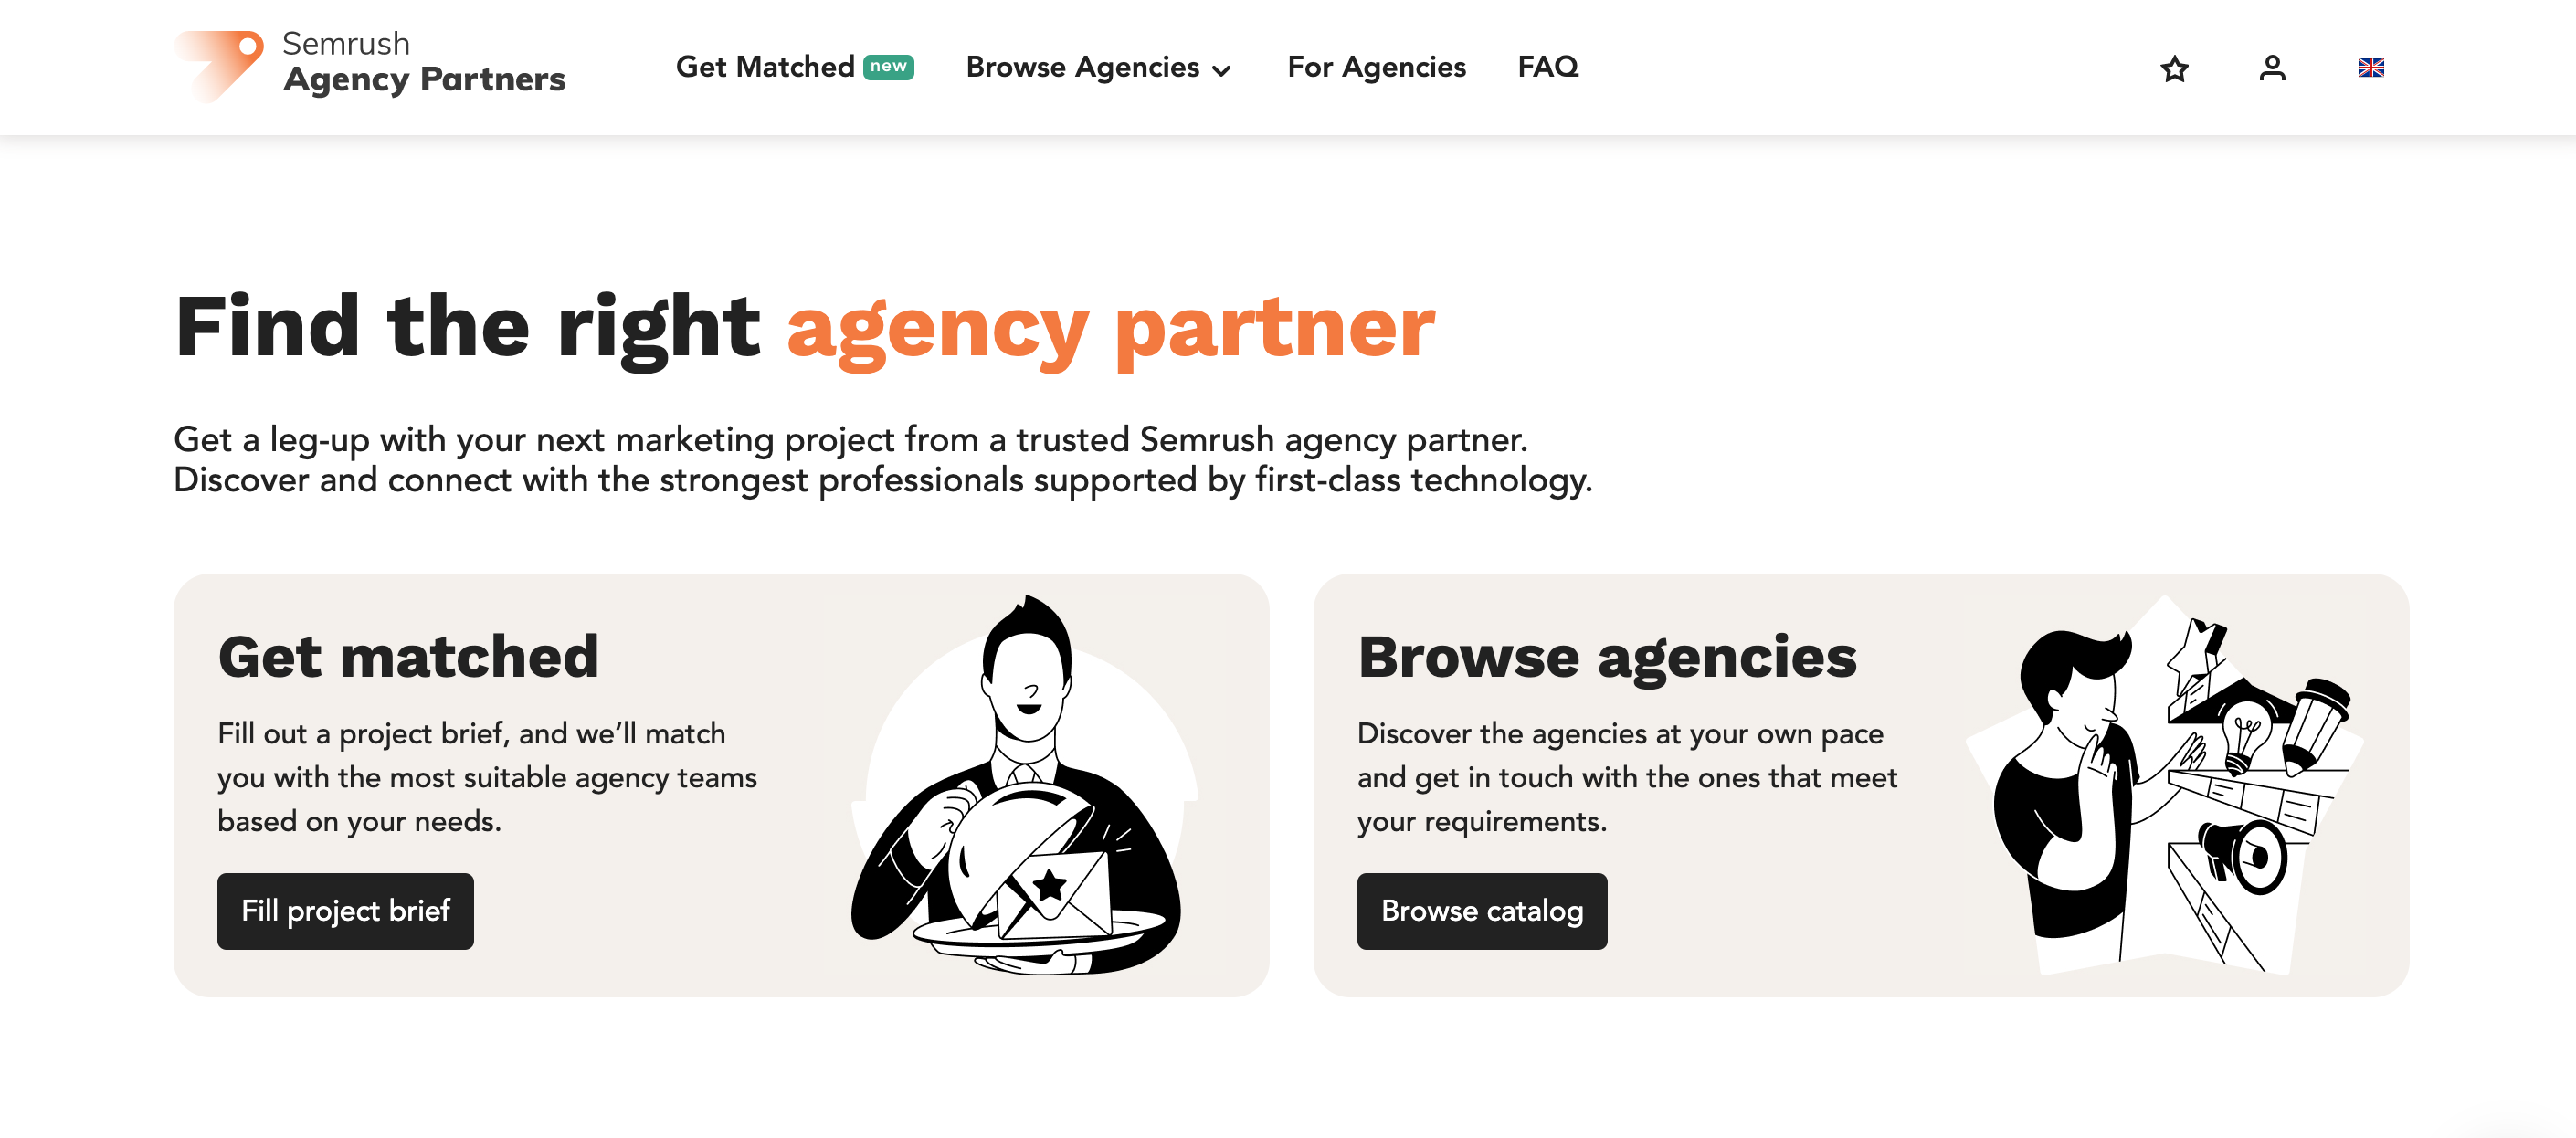 A página inicial da plataforma de Agências Parceiras mostrando botões para preencher o briefing de um projeto e obter correspondência ou navegar no catálogo de agências. 